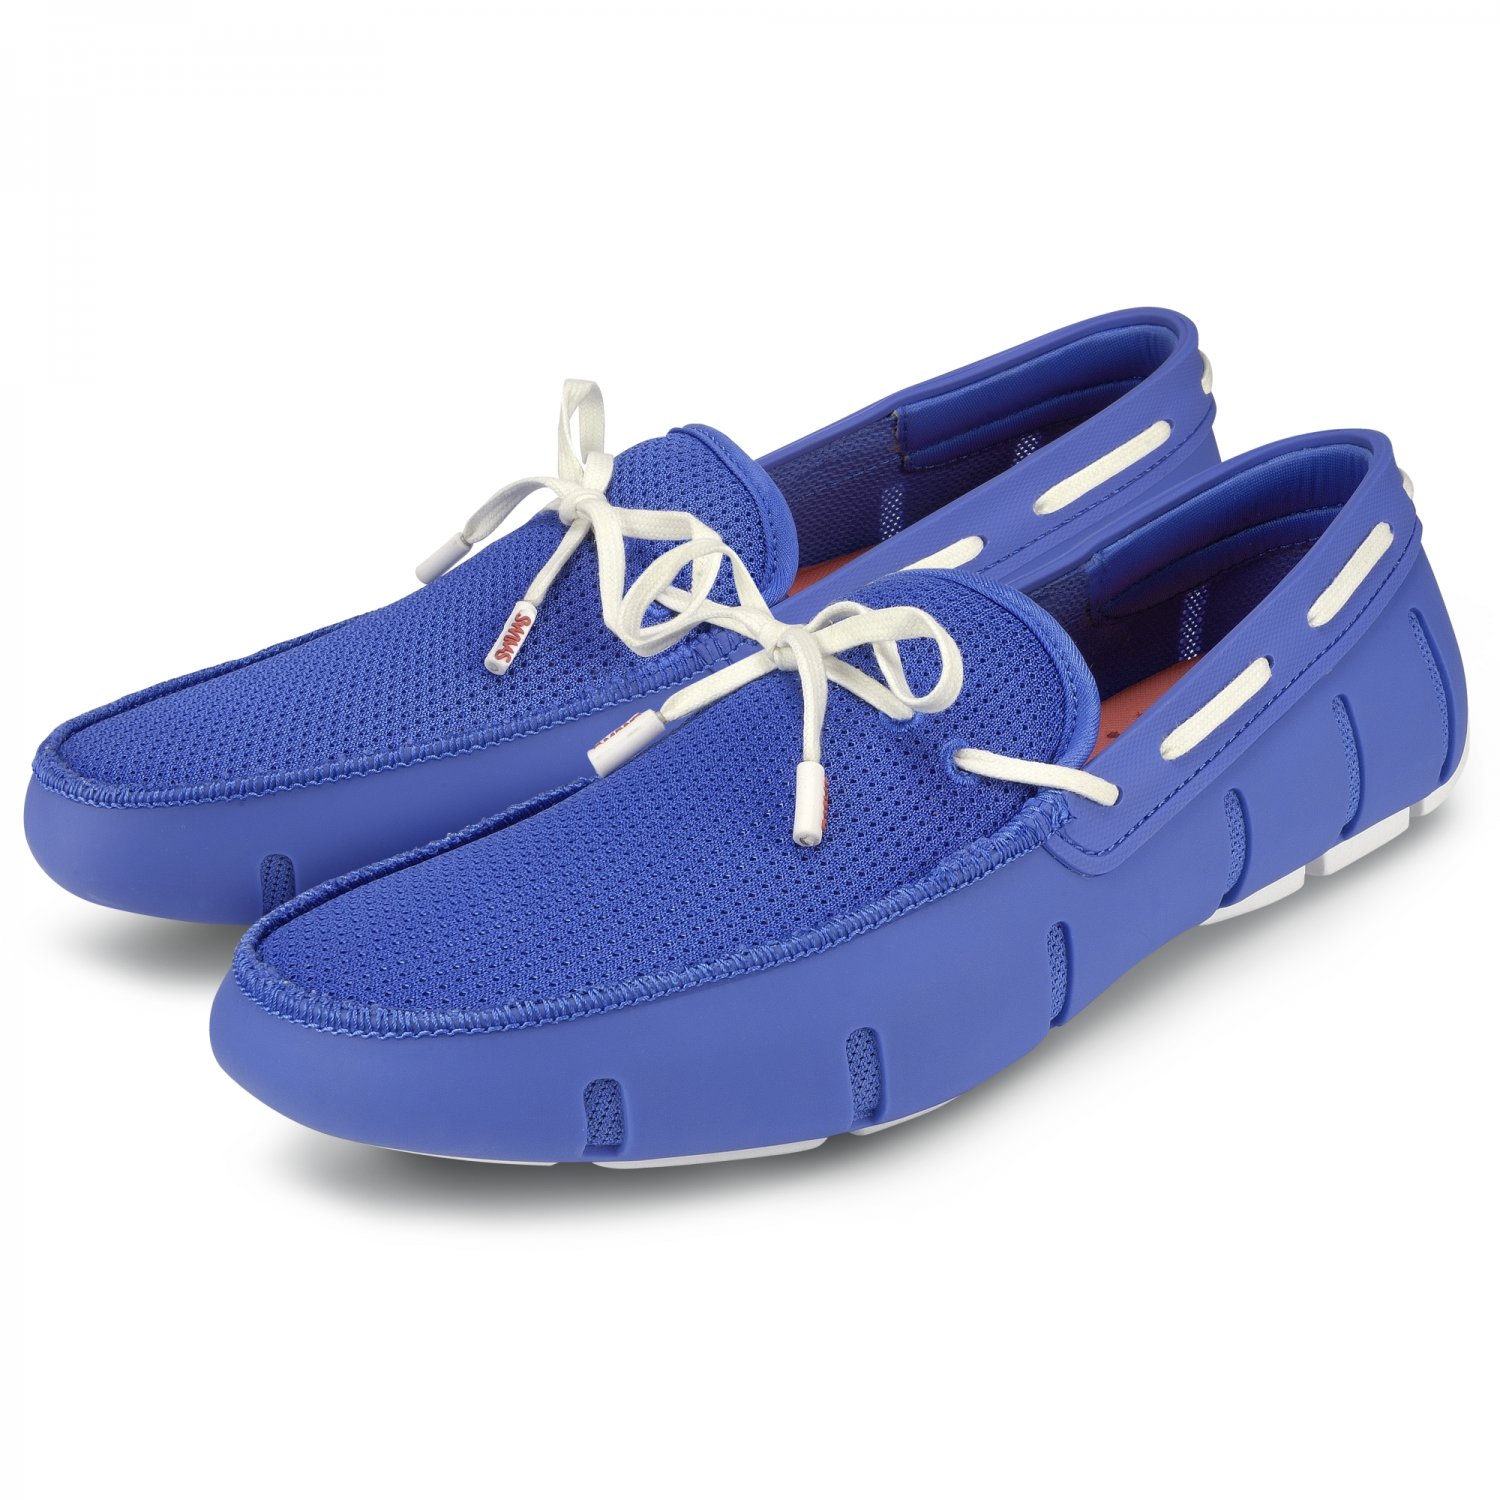 Мокасины мужские Loafer Lace Blue White - купить в интернет-магазине Odensya.ru